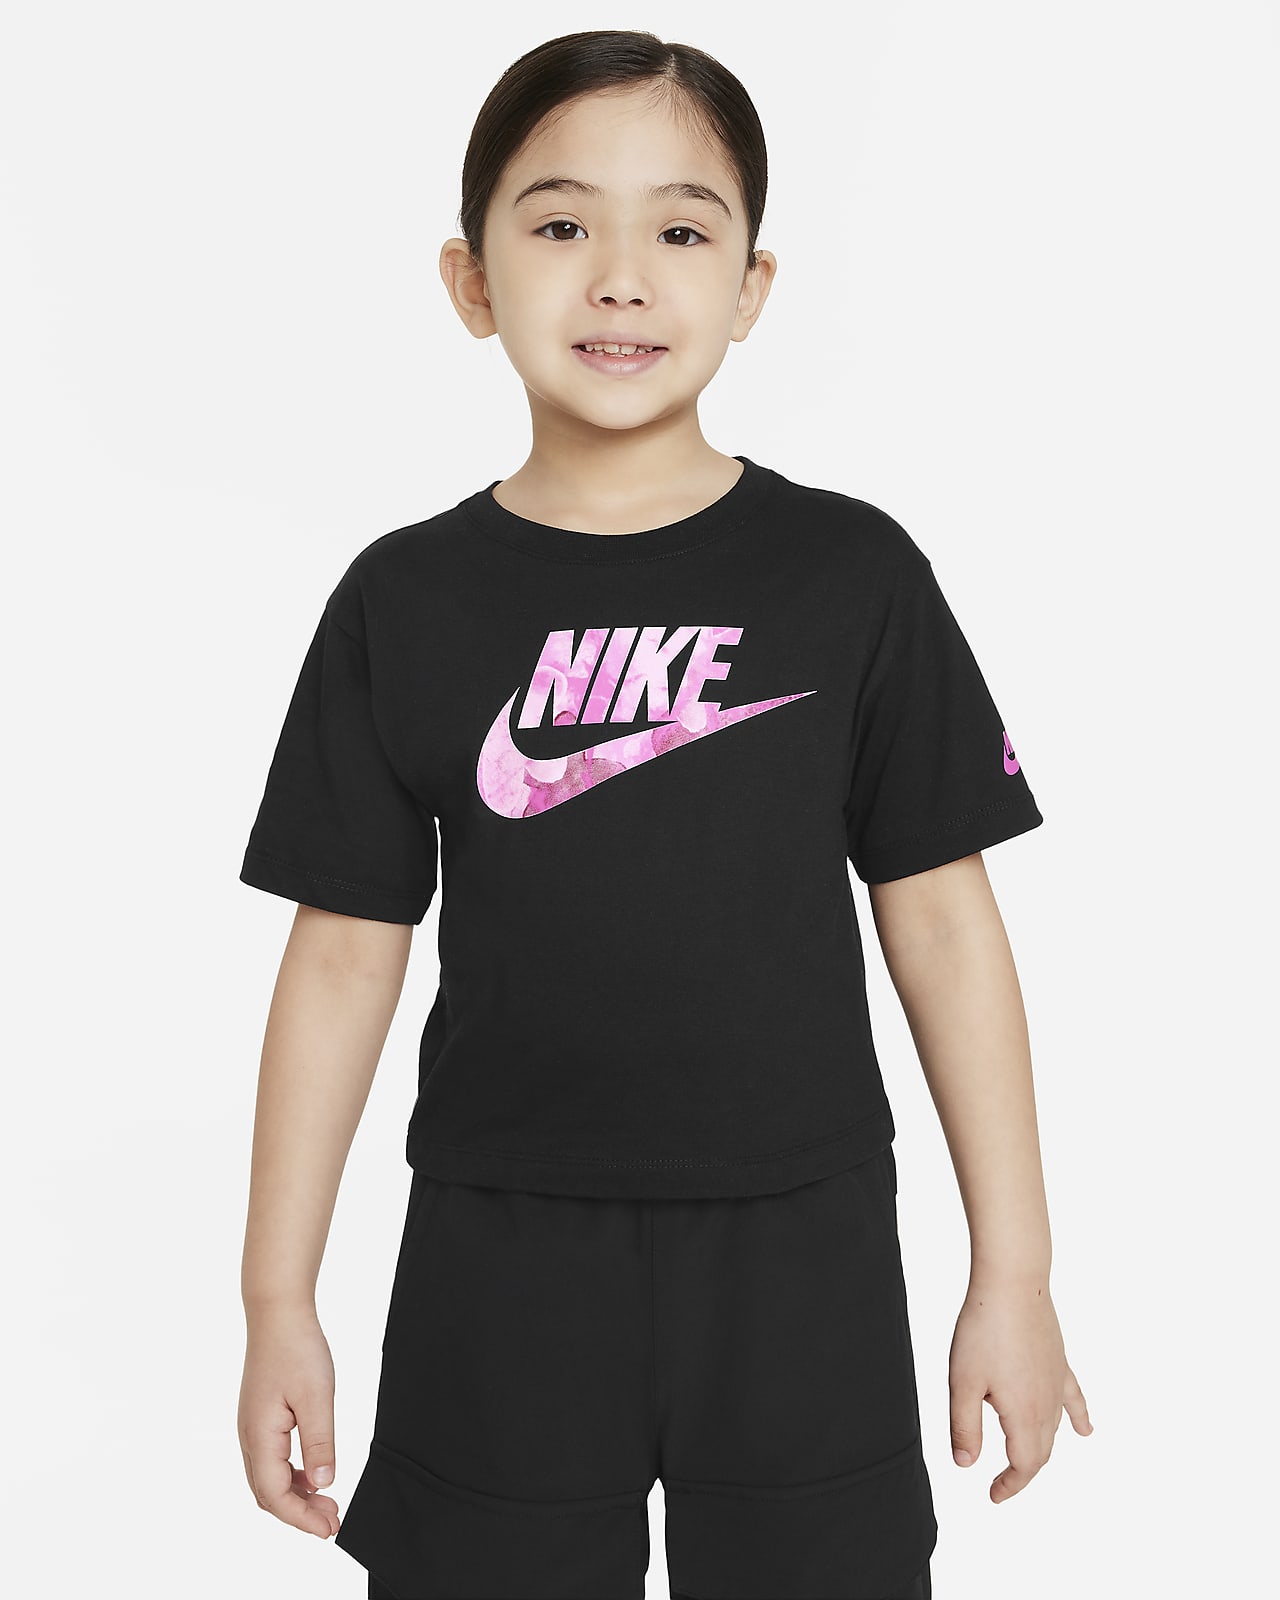 Tričko Nike Sci-Dye Boxy pro malé děti